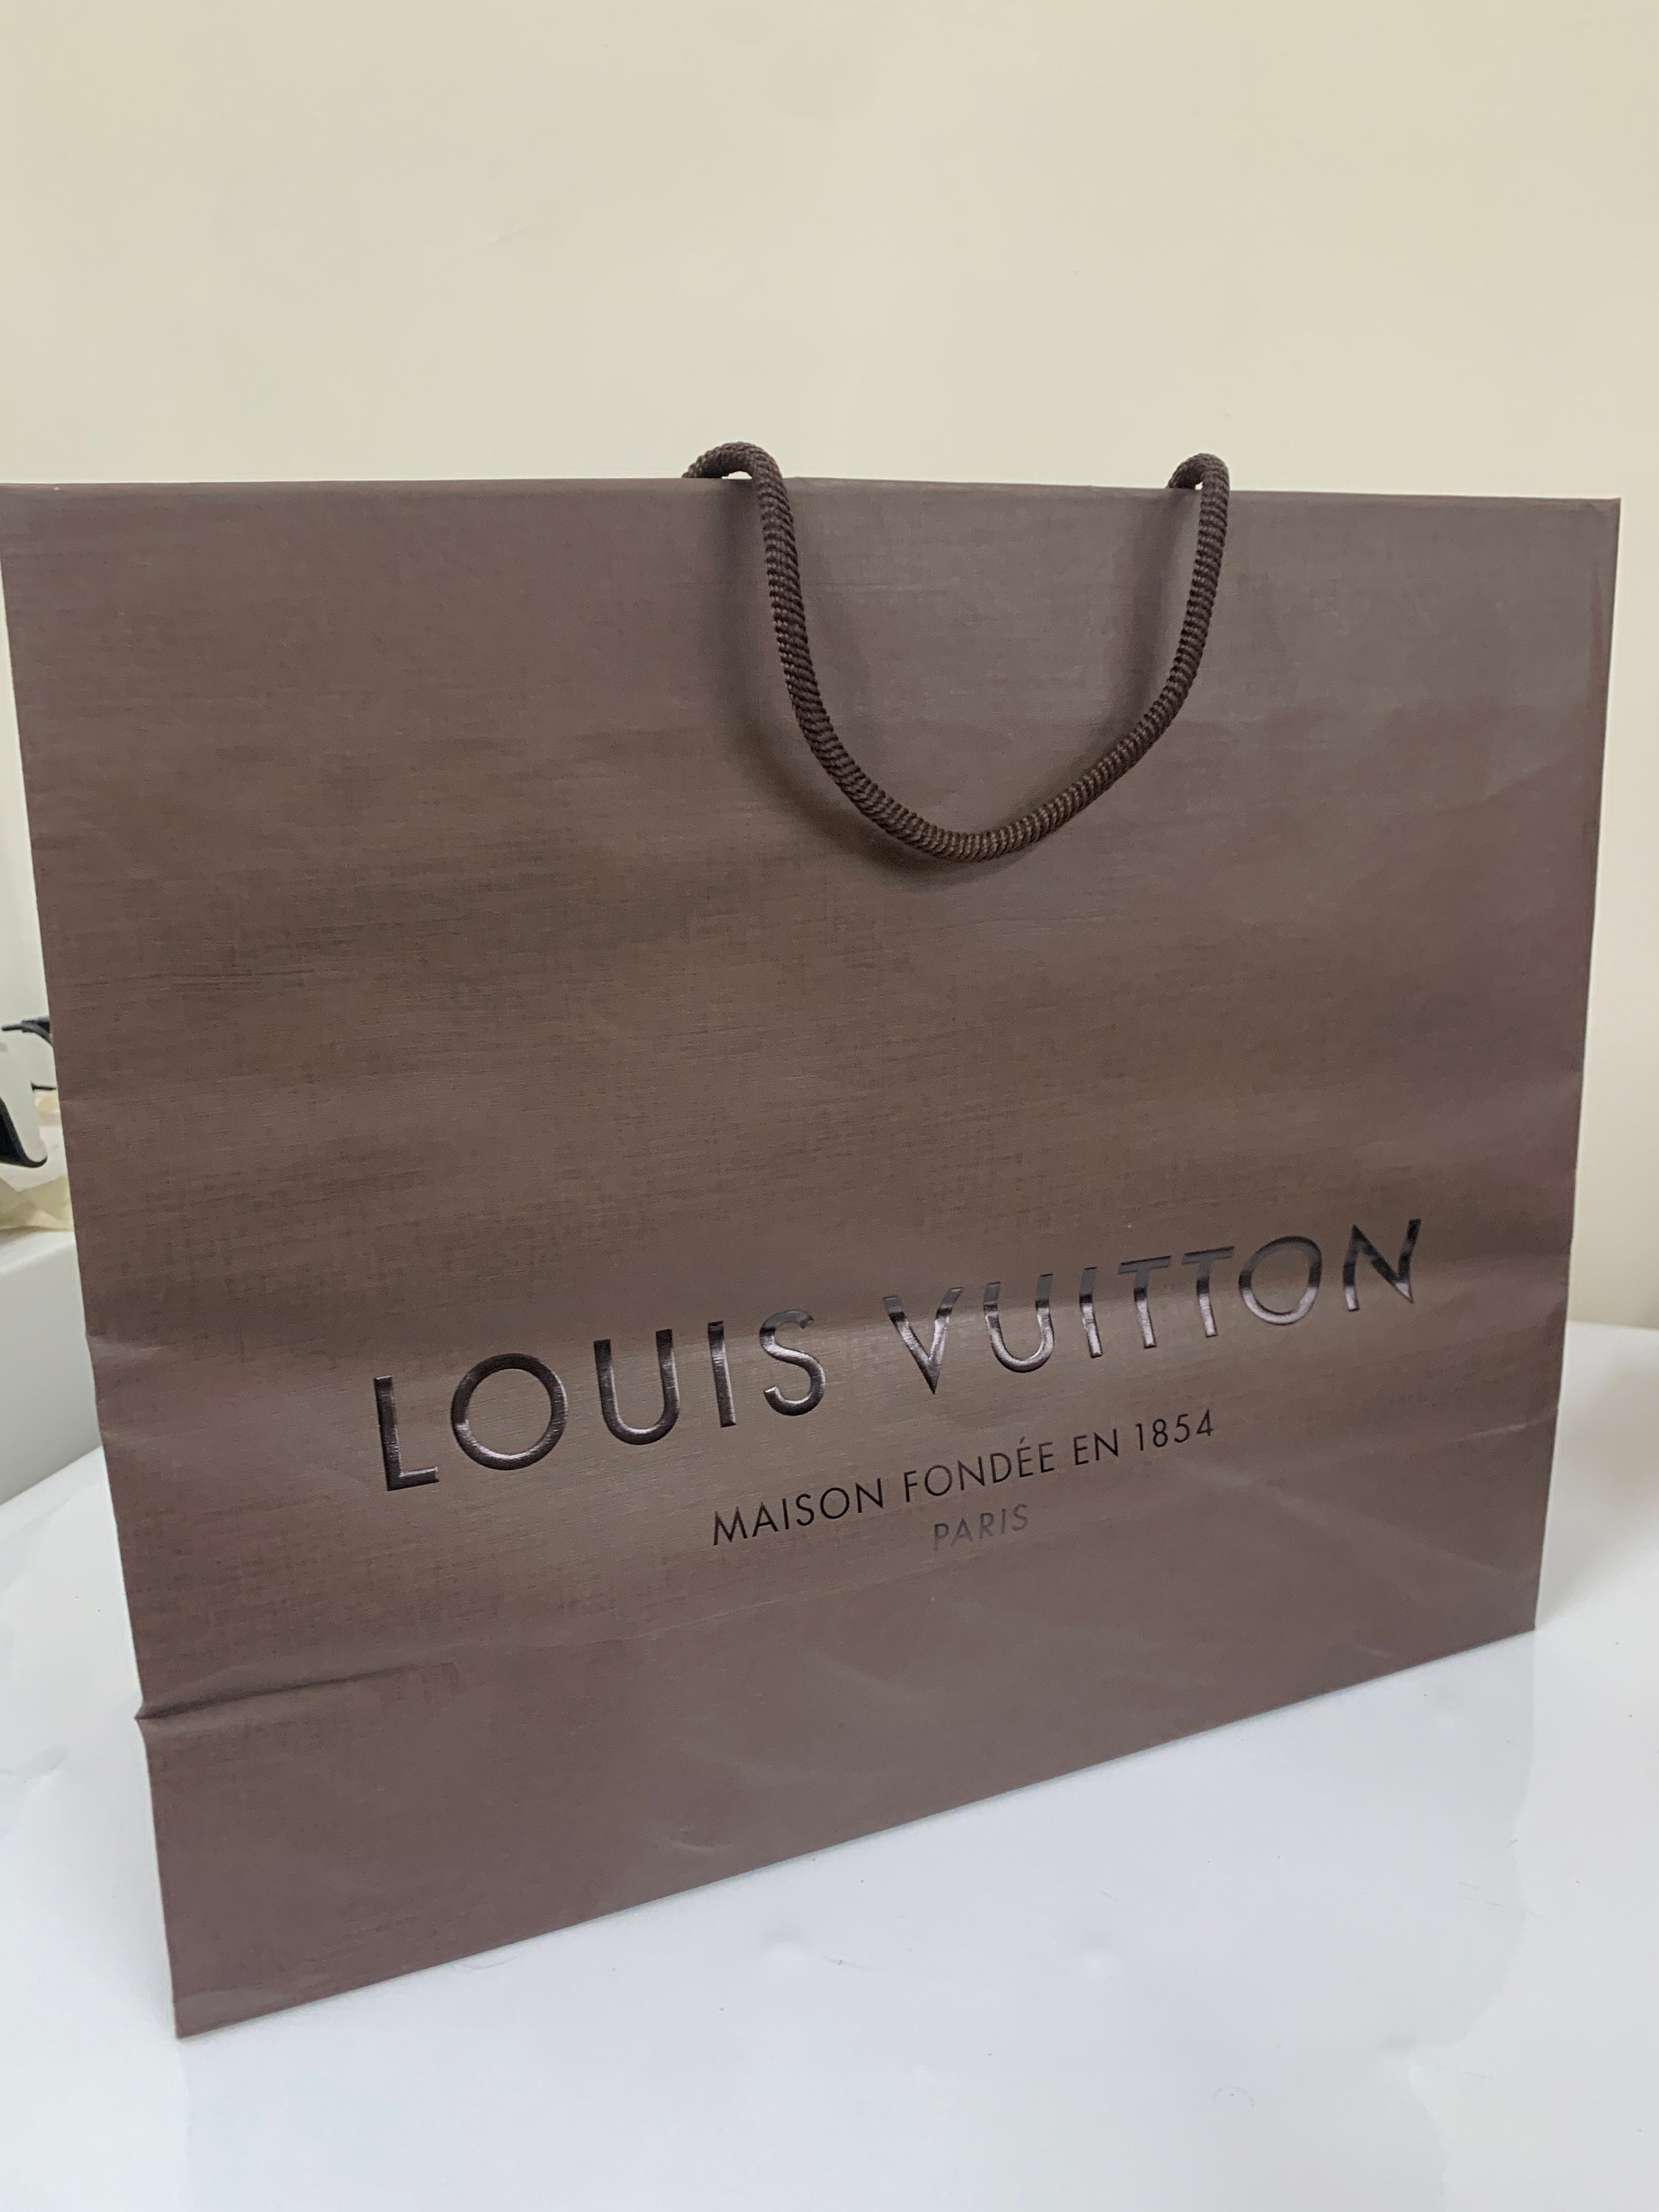 Authentic Louis Vuitton goods